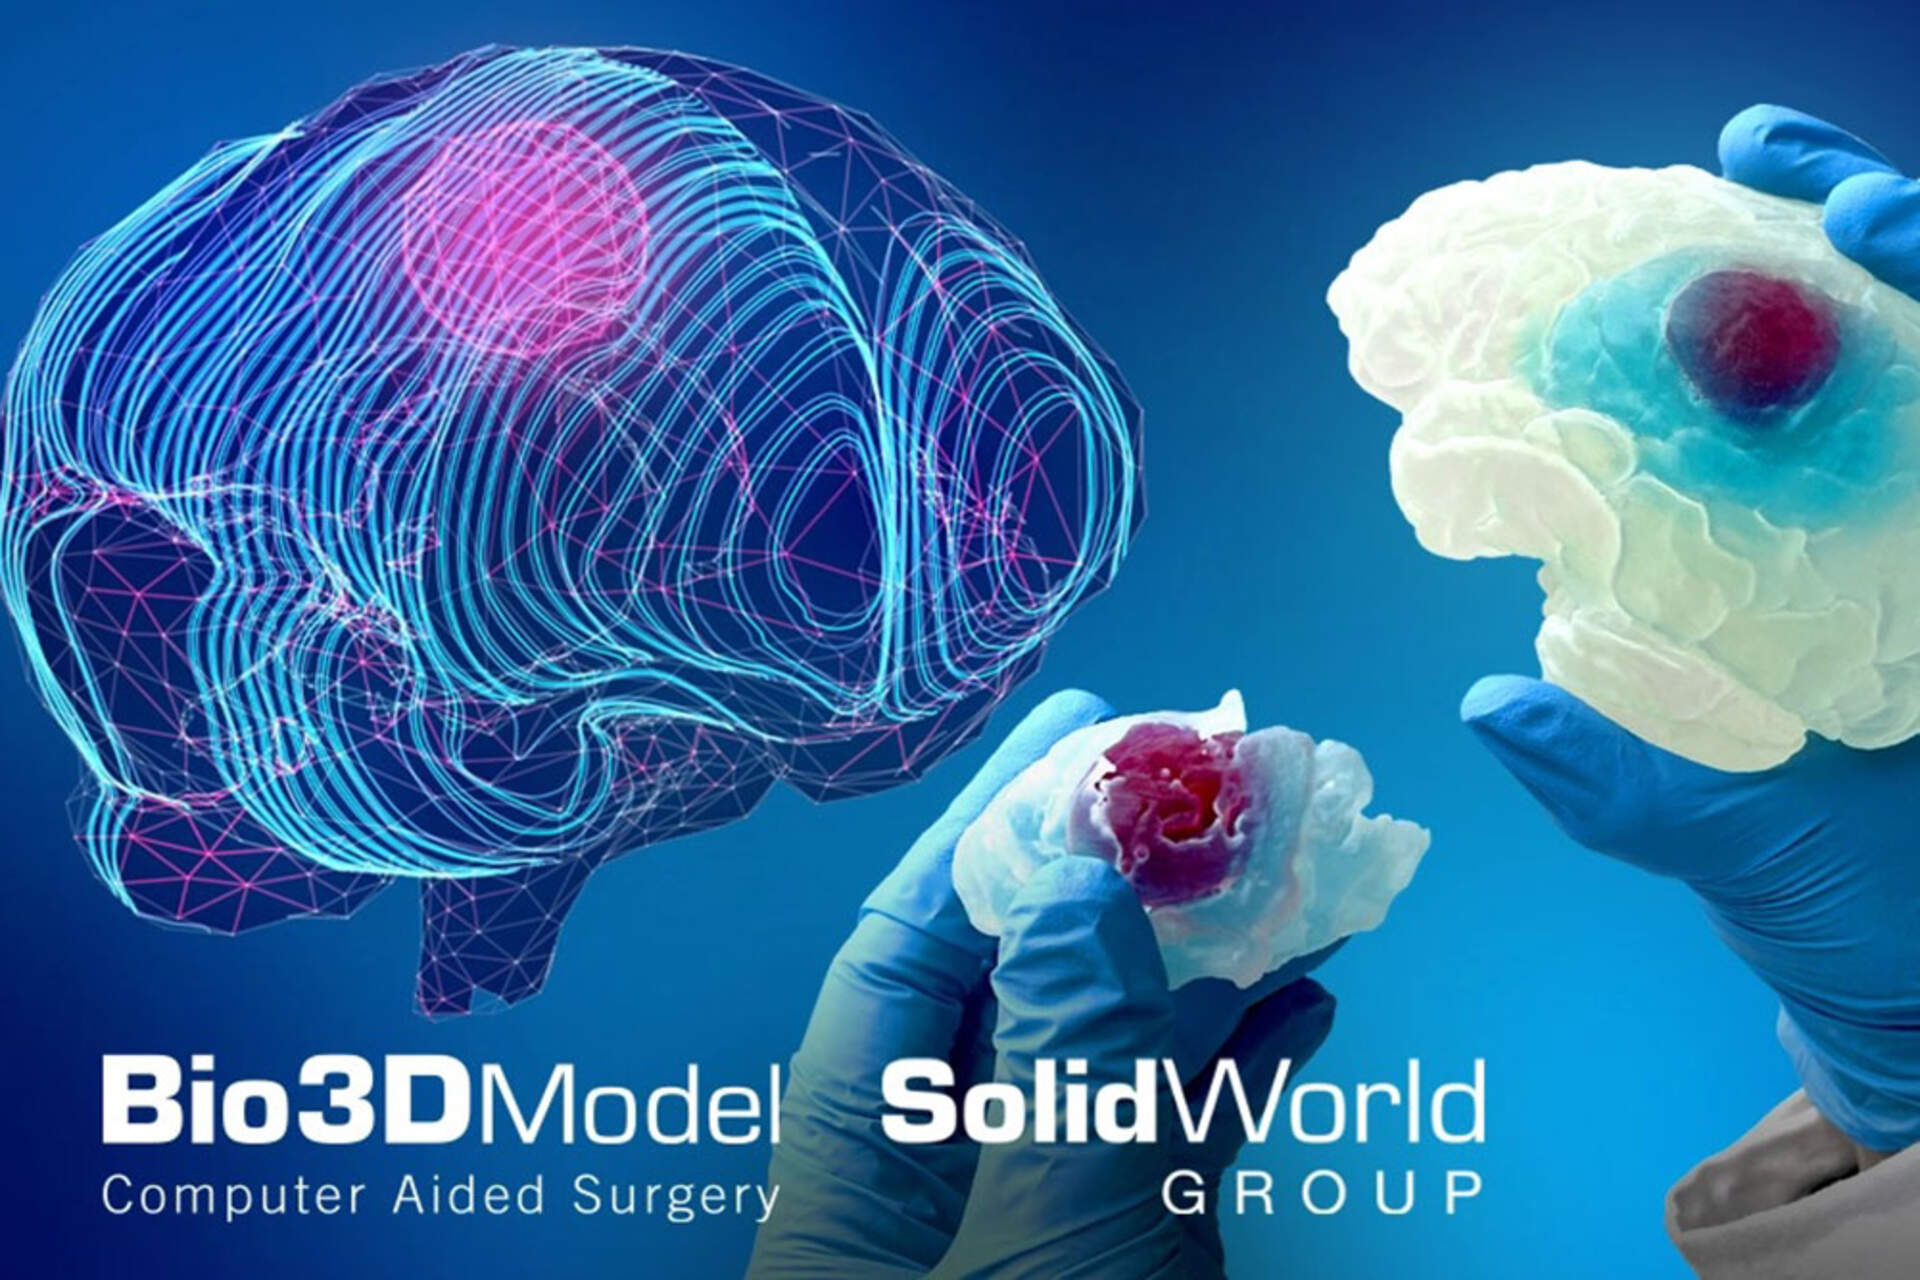 Cervell humà: una imatge clau del cervell afectat pel tumor impresa en 3D per SolidWorld Group